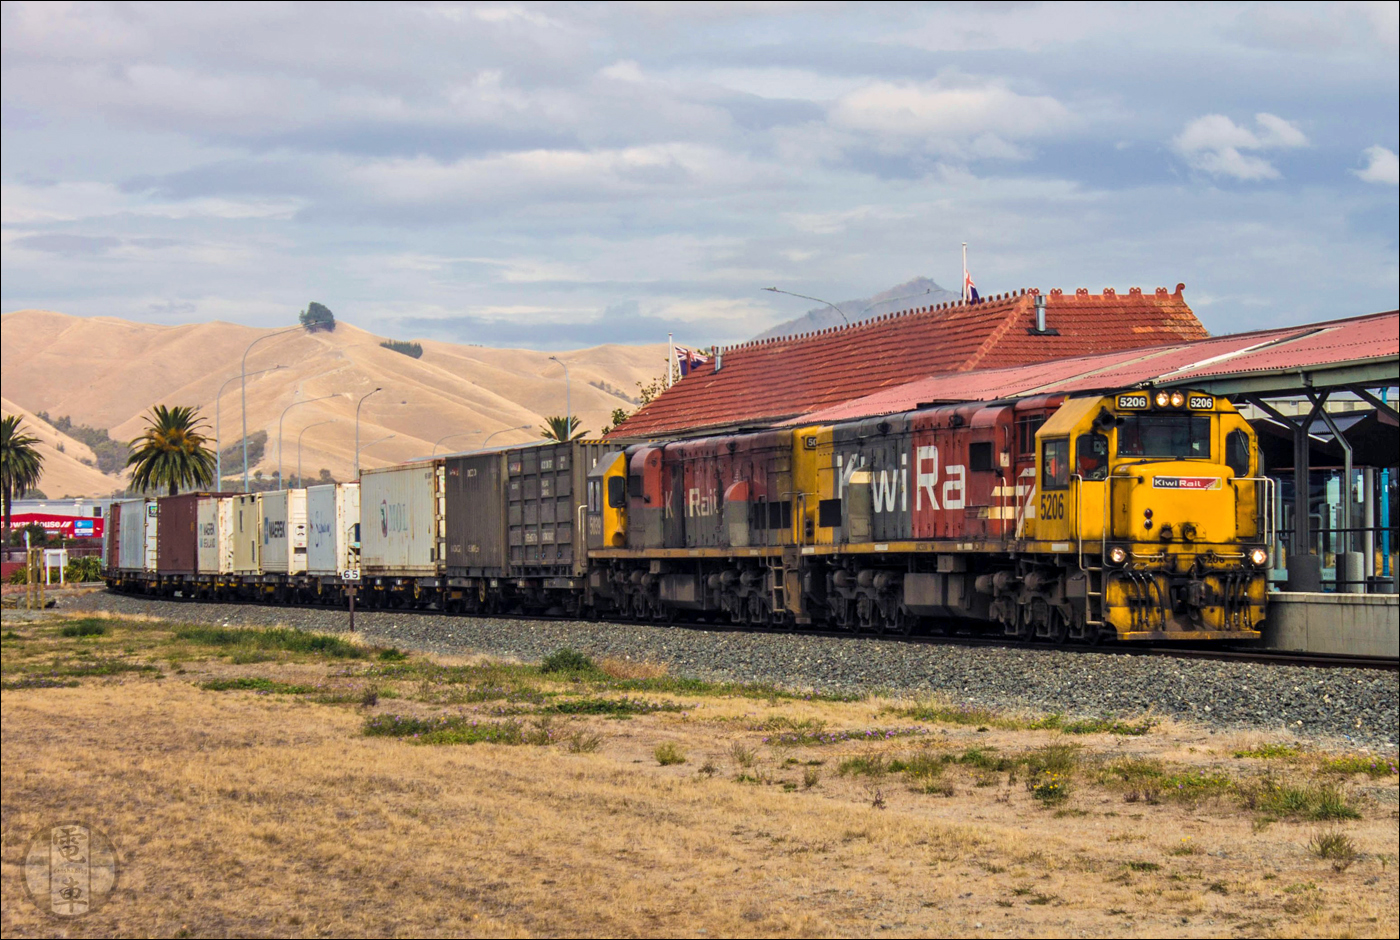 KiwiRail DXC (GE U26C) halad át tehervonatával a blenheimi állomáson. A Picton – Christchurch vonal mentén fekvő Blenheim egyébként saját konténerterminállal is rendelkezik a várostól északra fekvő Spring Creek határában, melyet egy pár tehervonat szolgál ki Pictonból a hét öt napján.